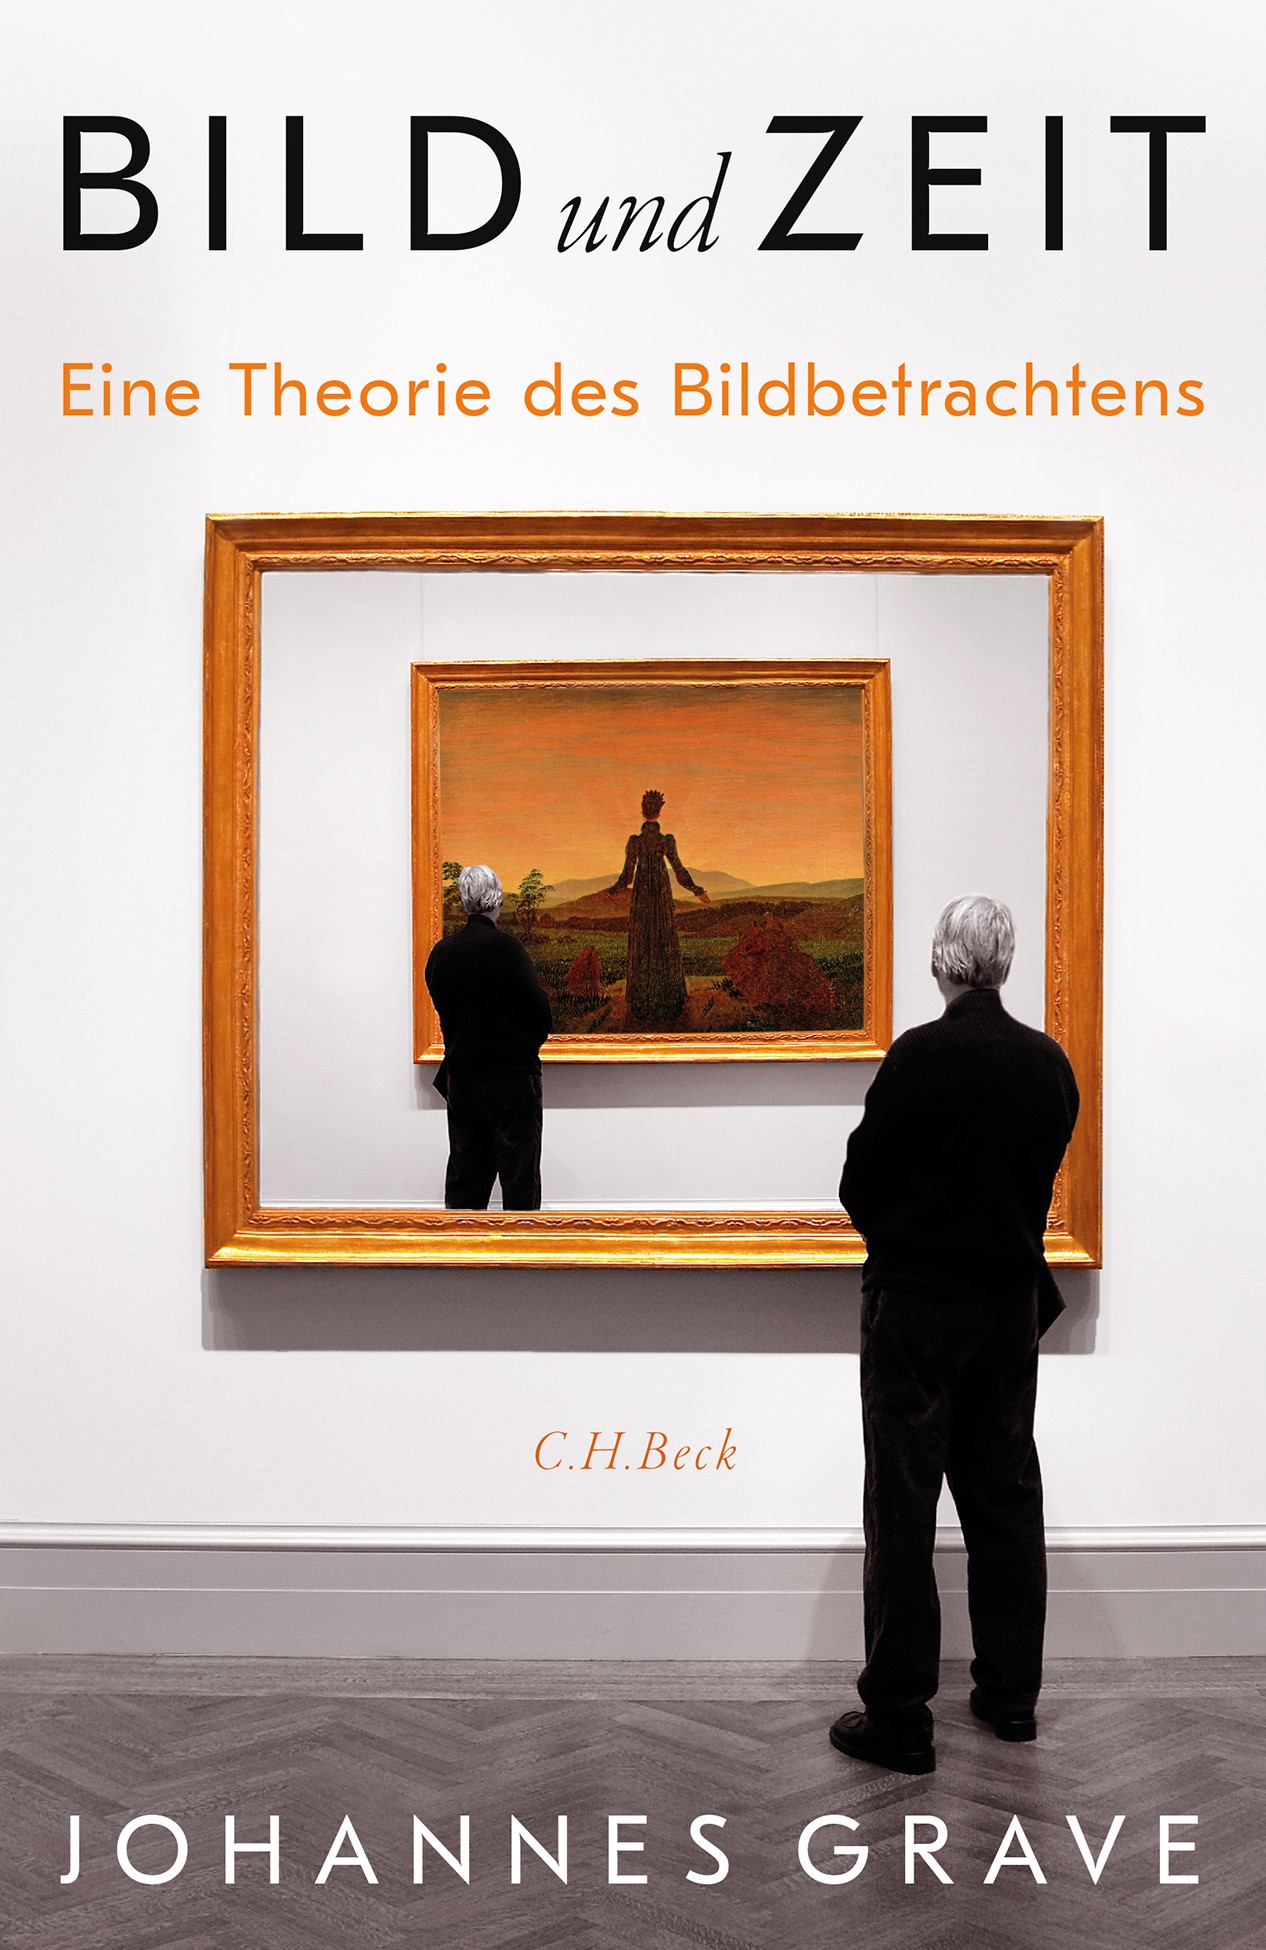 Cover: Grave, Johannes, Bild und Zeit